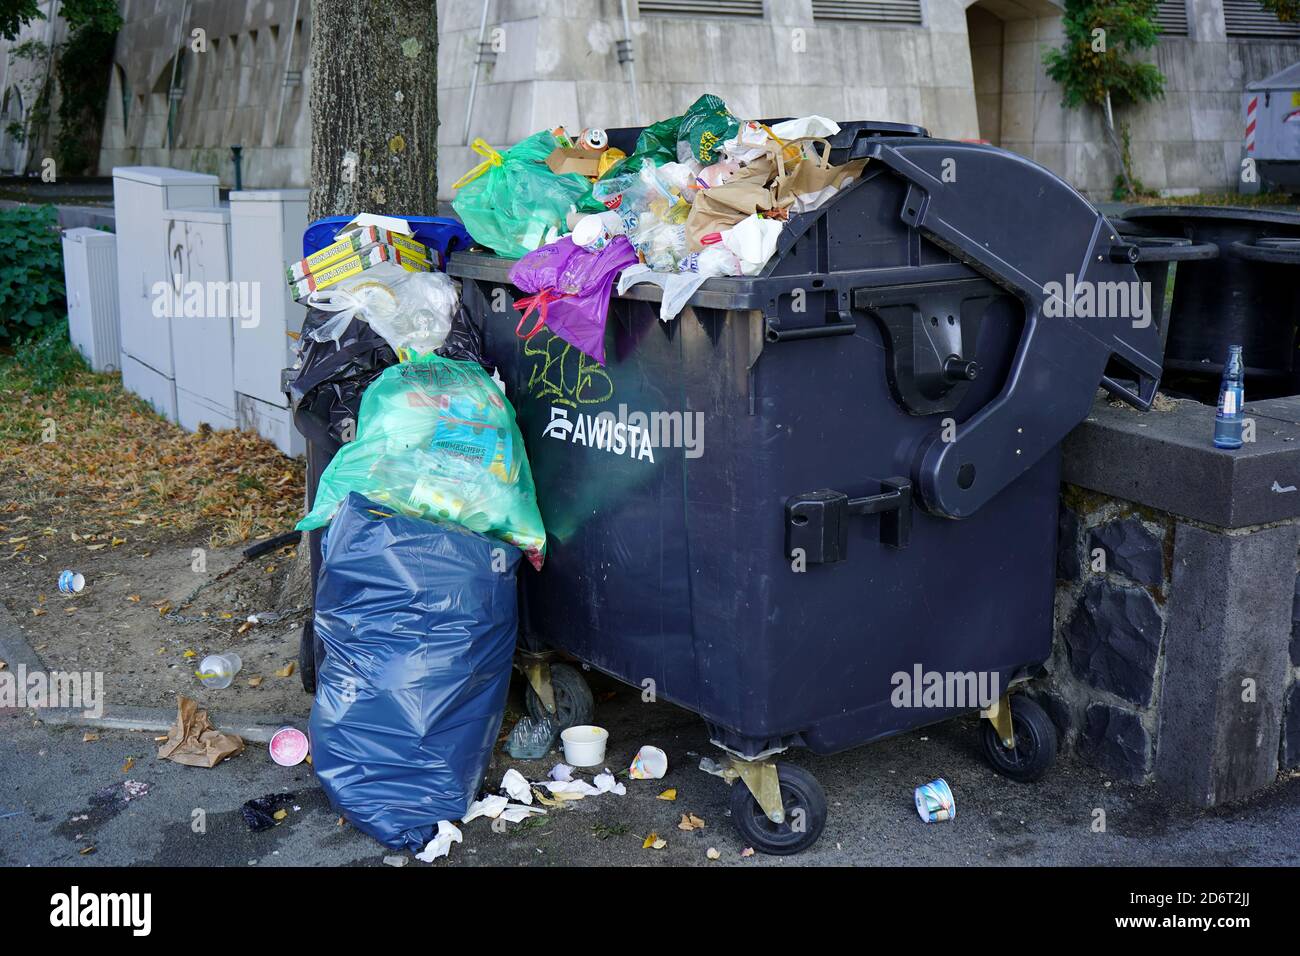 Poubelle désordonnée avec sacs poubelle et ordures éparpillées. Banque D'Images